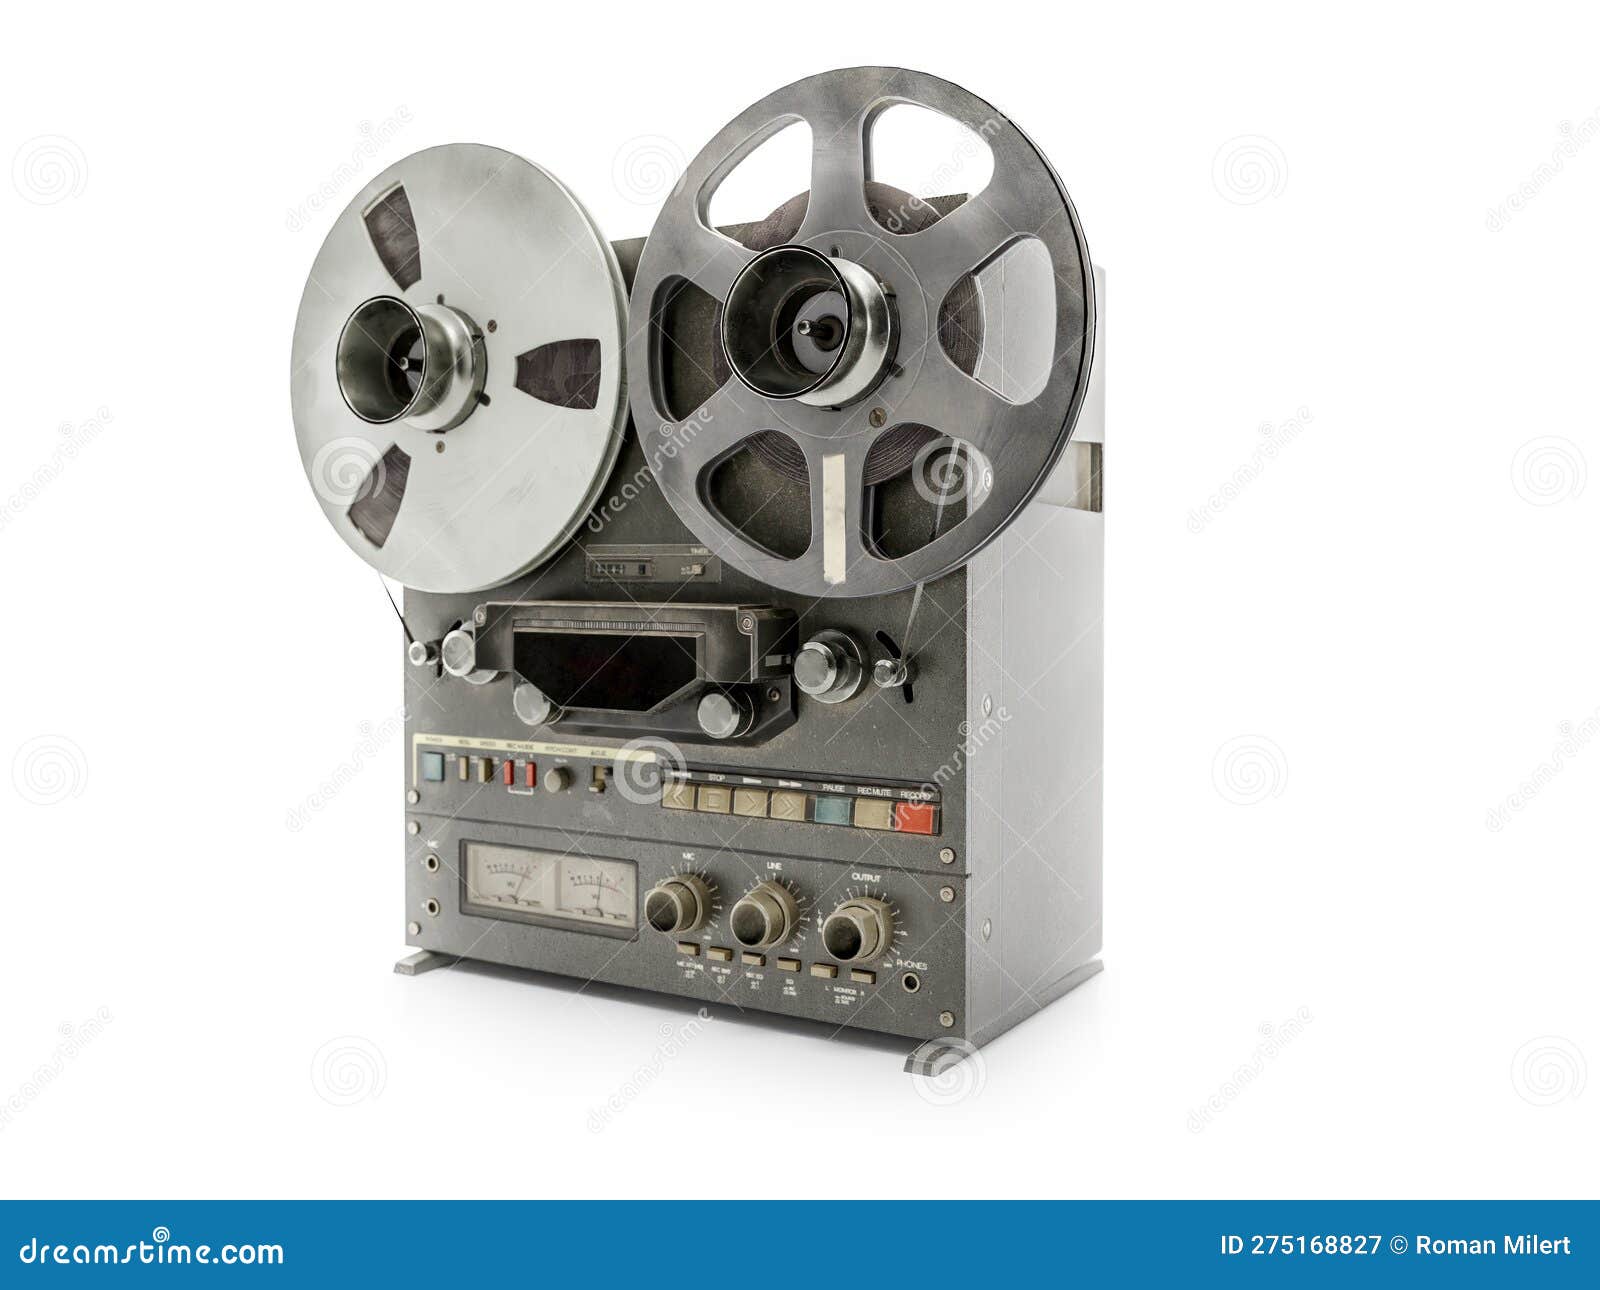 Vintage Reel To Reel Stereo Tape Deck Recorder Stock Illustrations – 62  Vintage Reel To Reel Stereo Tape Deck Recorder Stock Illustrations, Vectors  & Clipart - Dreamstime